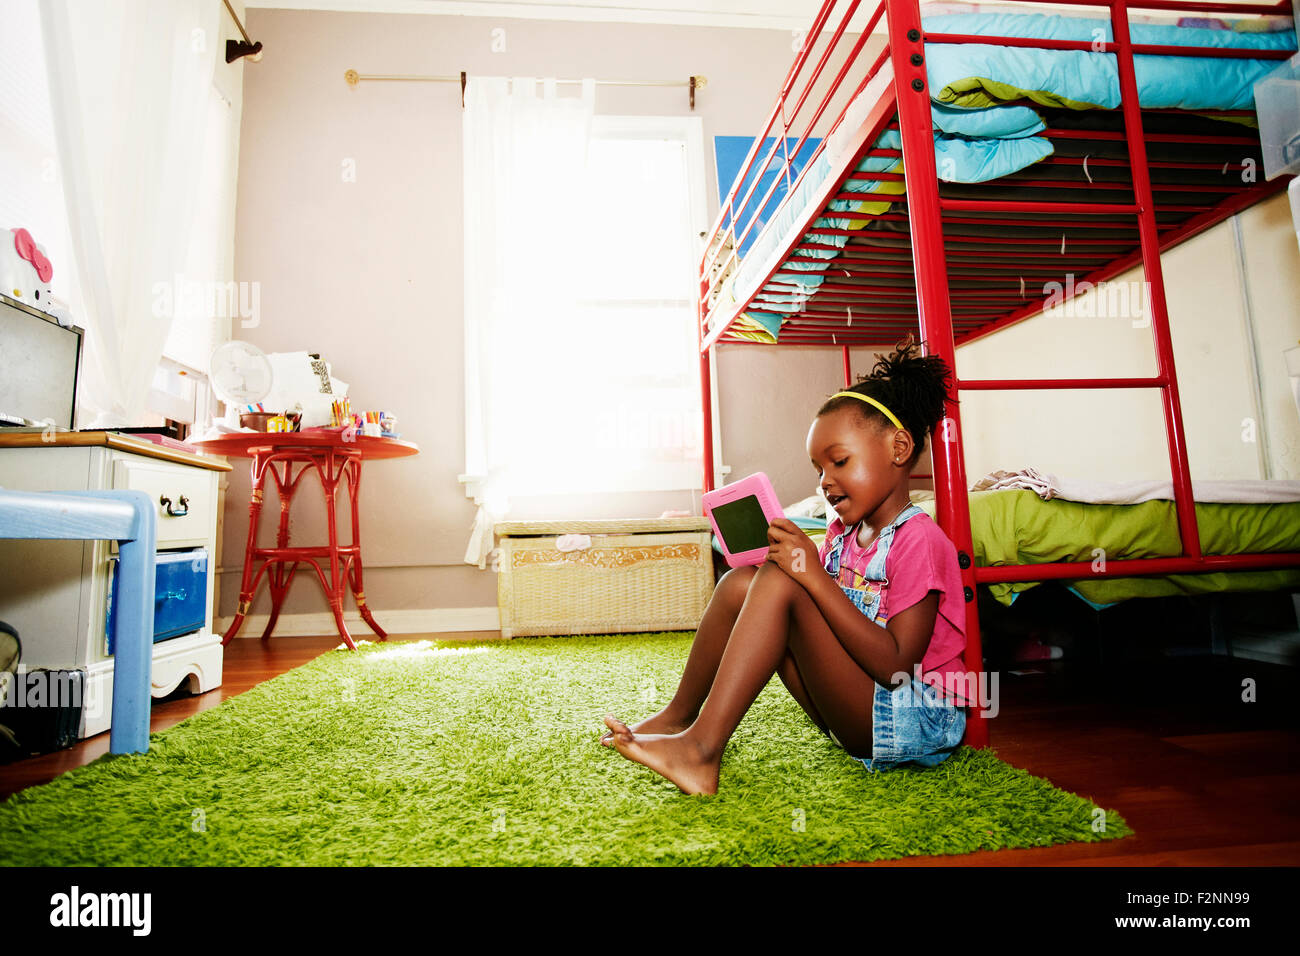 Black girl using digital tablet in bedroom Stock Photo